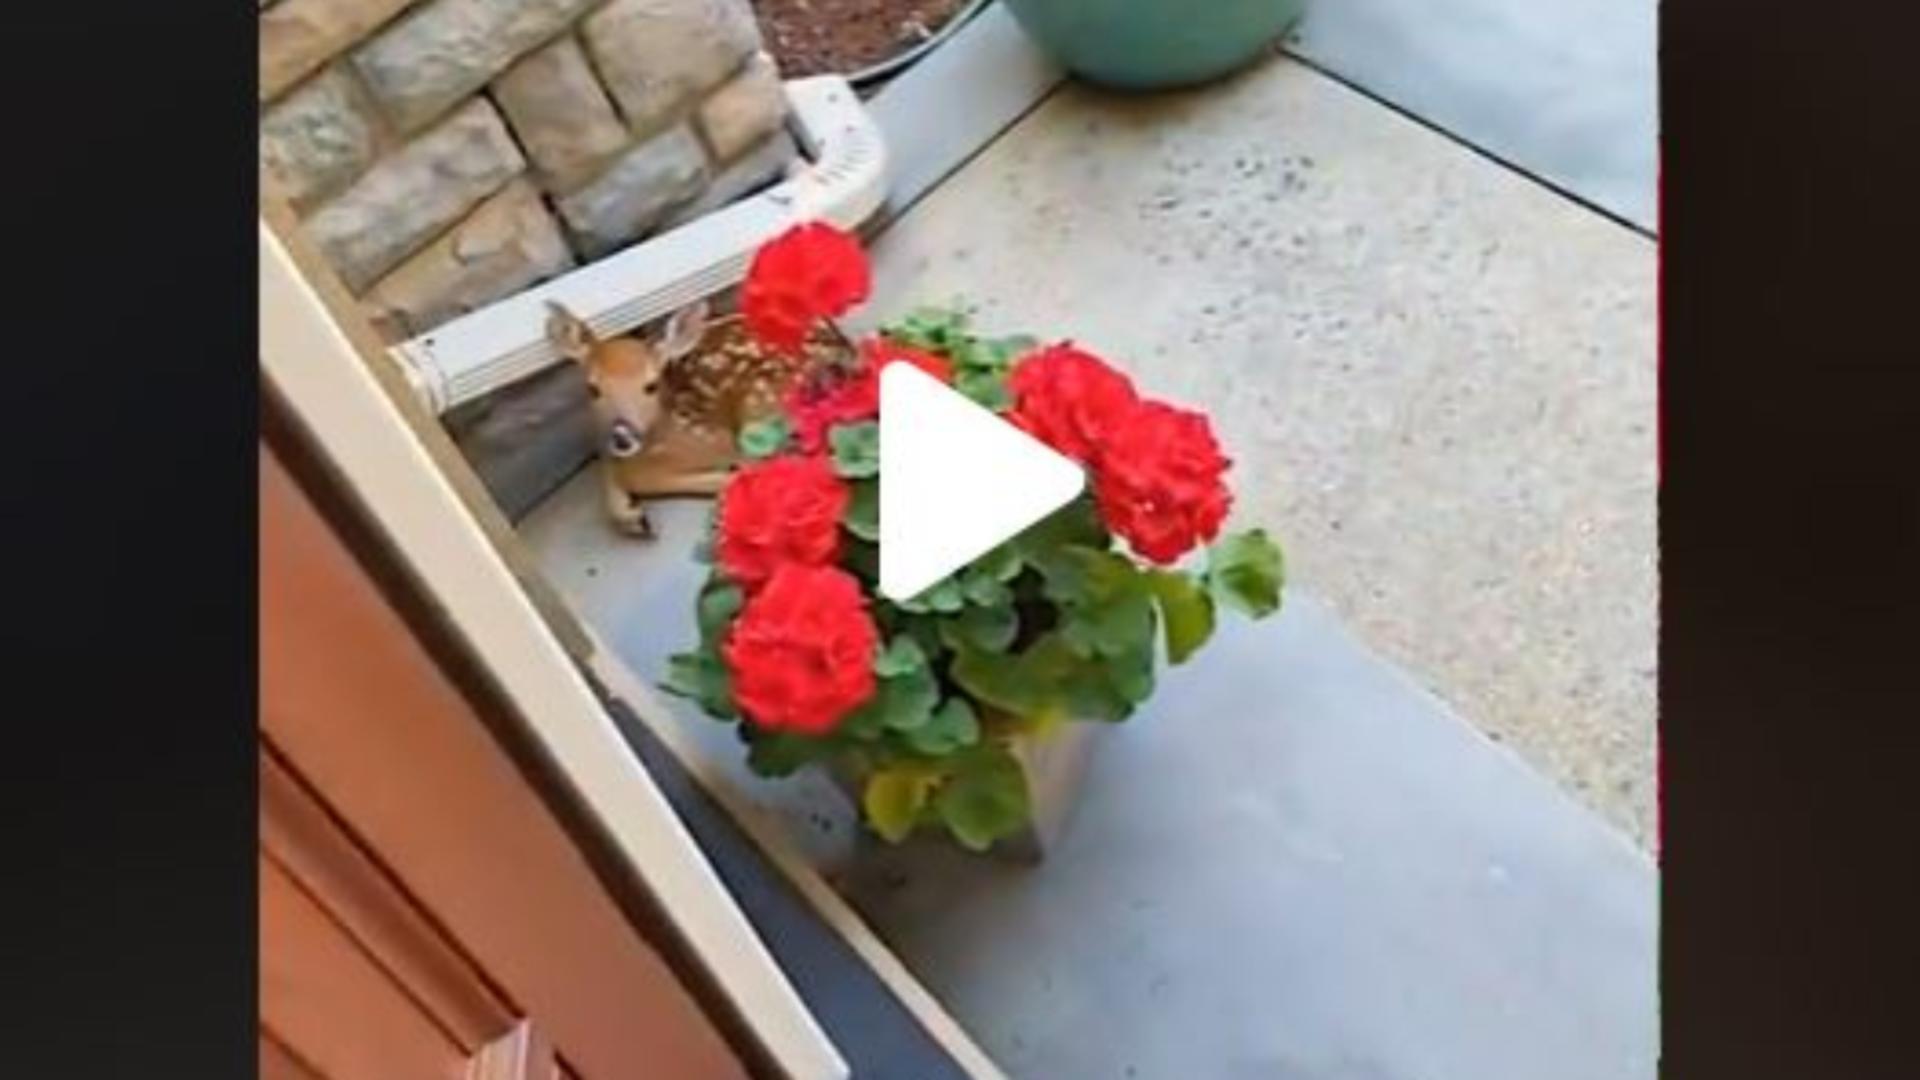 VIDEO – A auzit un zgomot ciudat și a deschis repede ușa casei – Inițial nu a văzut pe nimeni, însă după ce s-a uitat mai bine, printre flori, a observat ceva uluitor